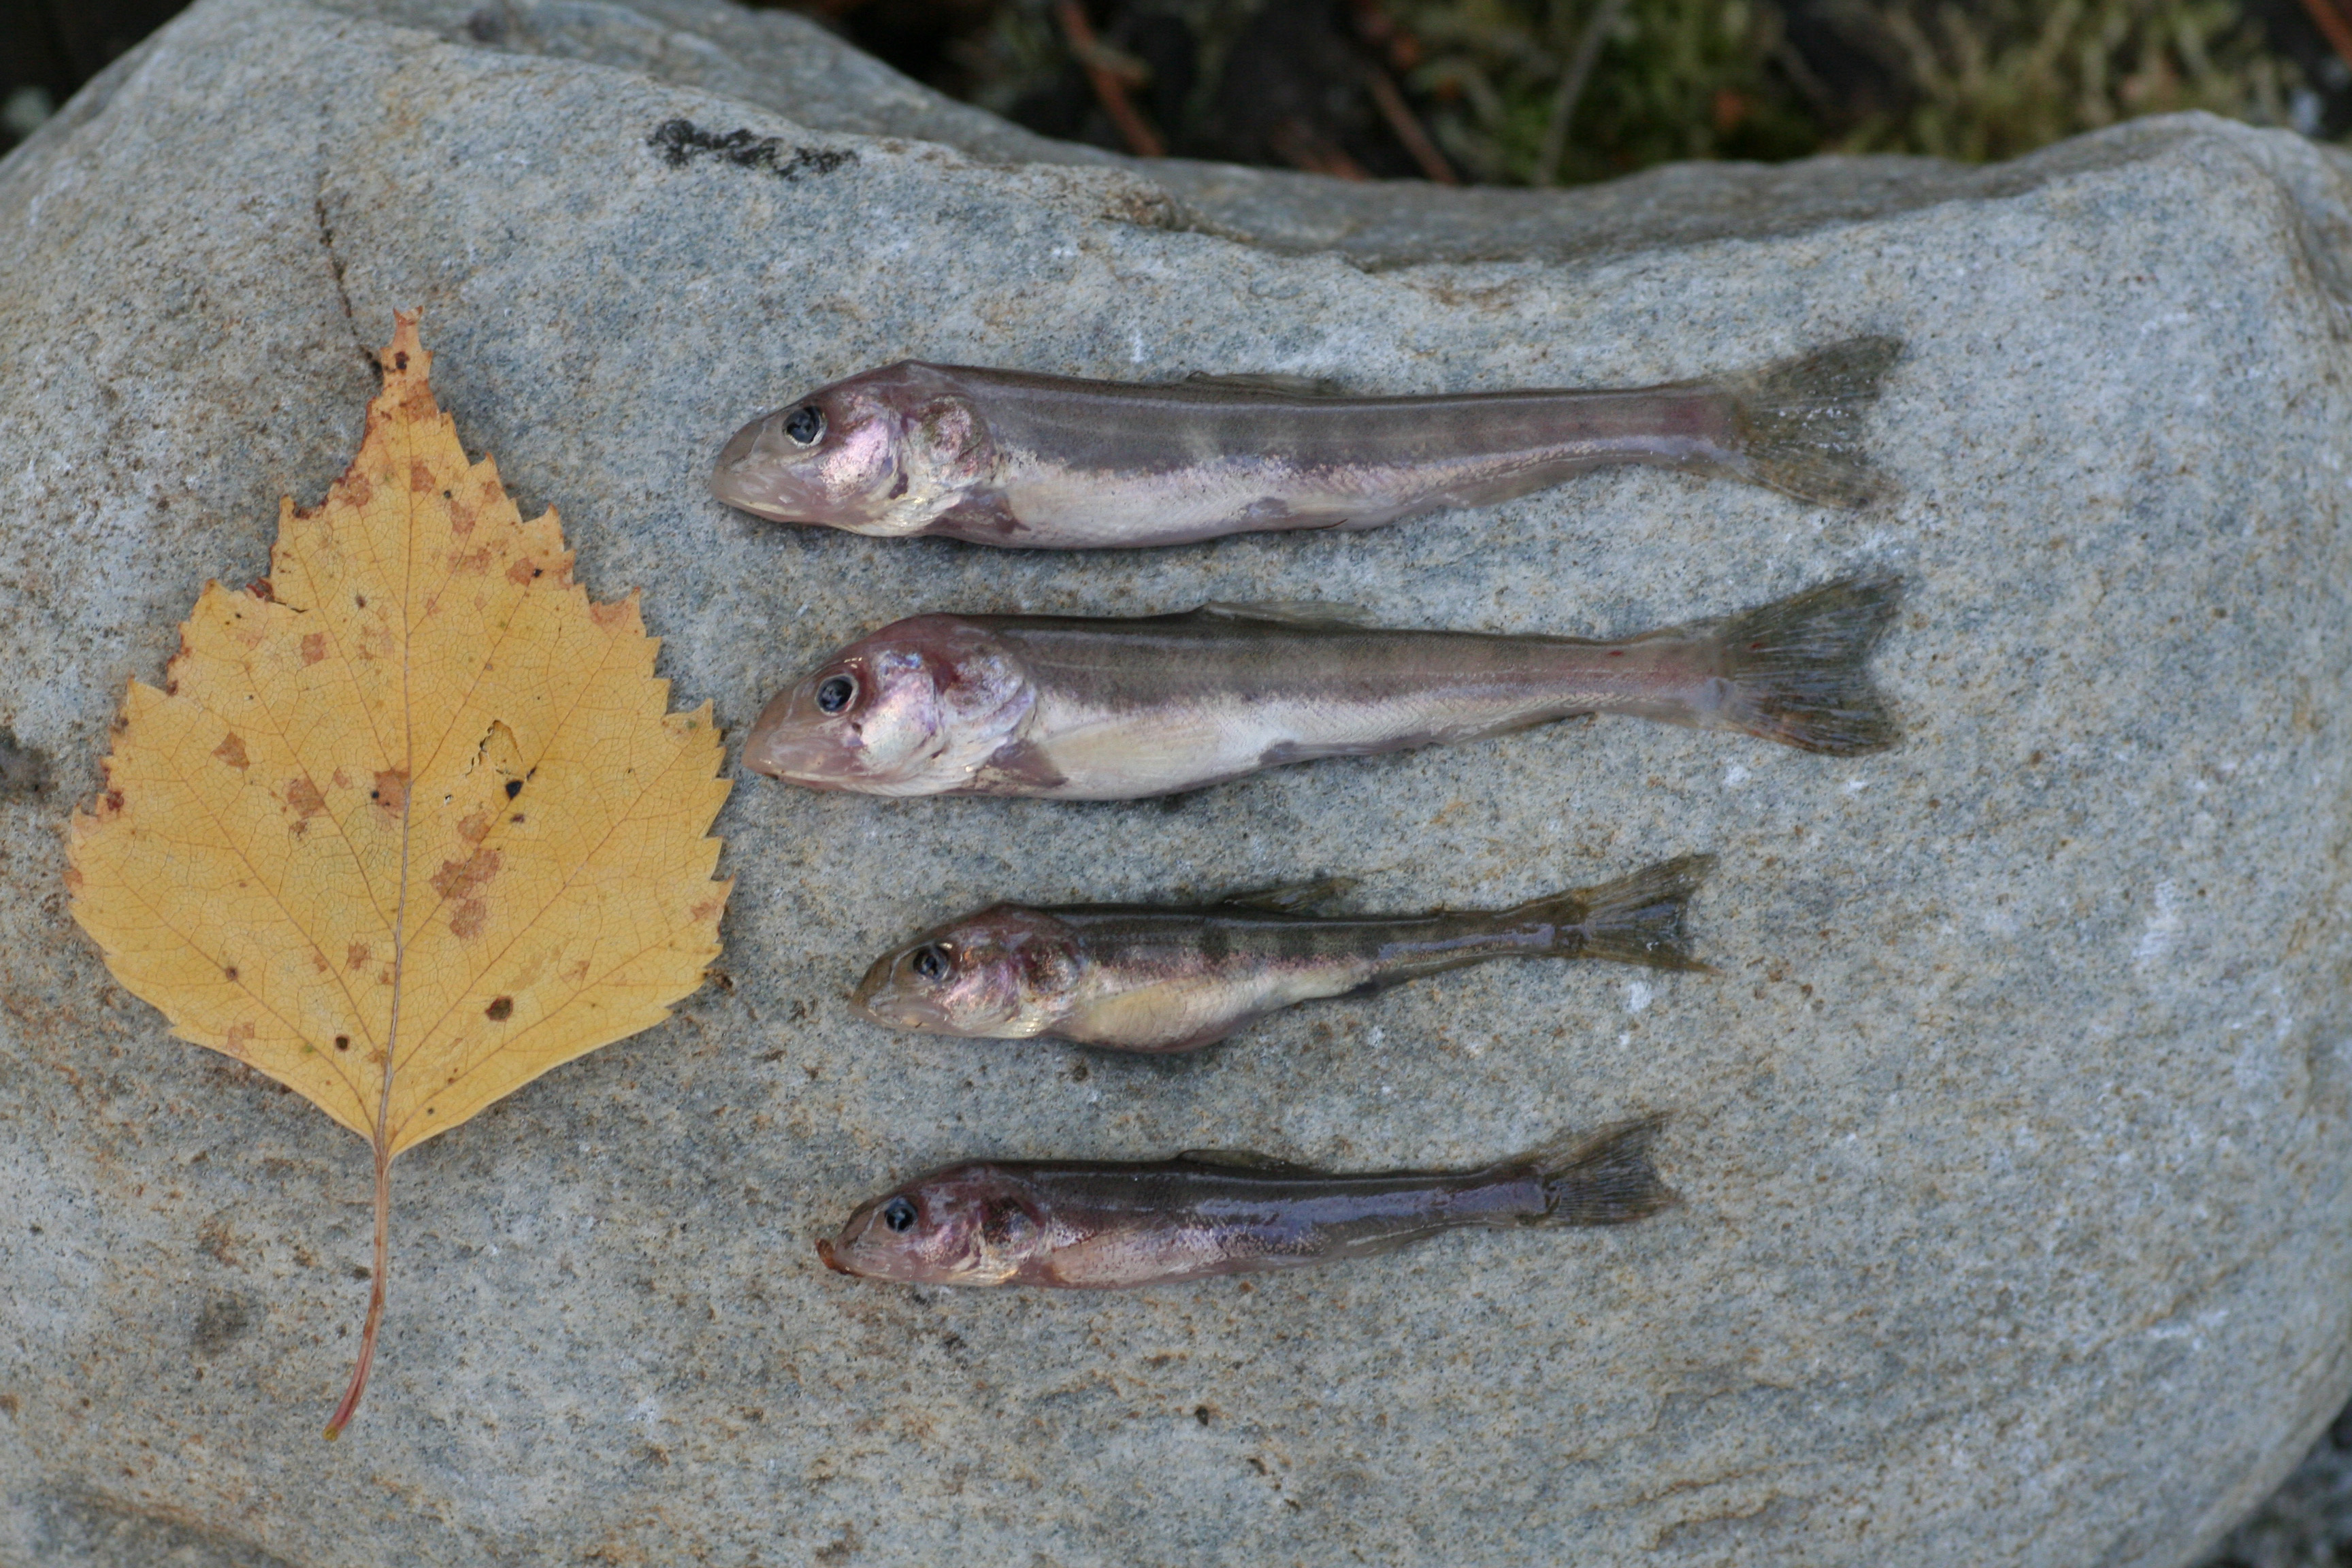 Fire eksemplarer av den nyoppdagede, bitte lille dypvannsrøya. Et løvblad viser størrelsen